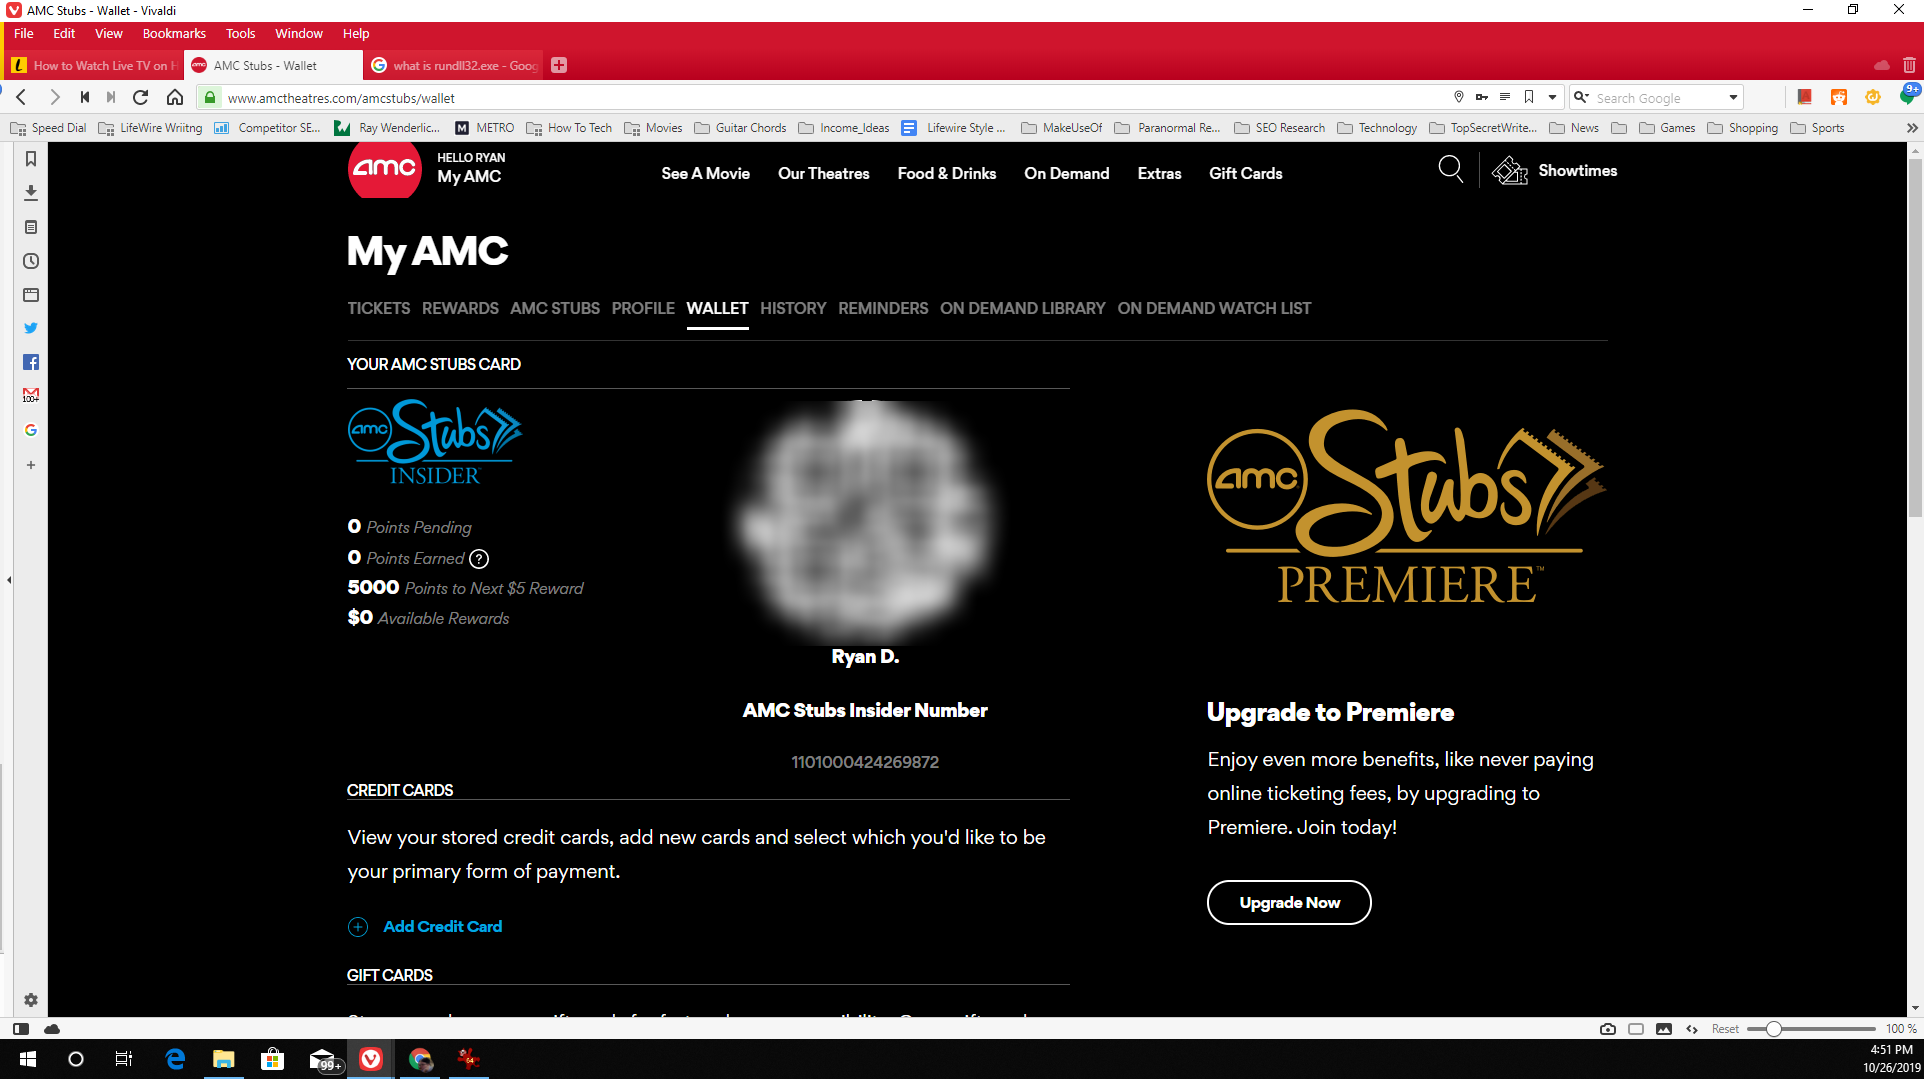 Captura de tela do saldo de pontos AMC Stubs